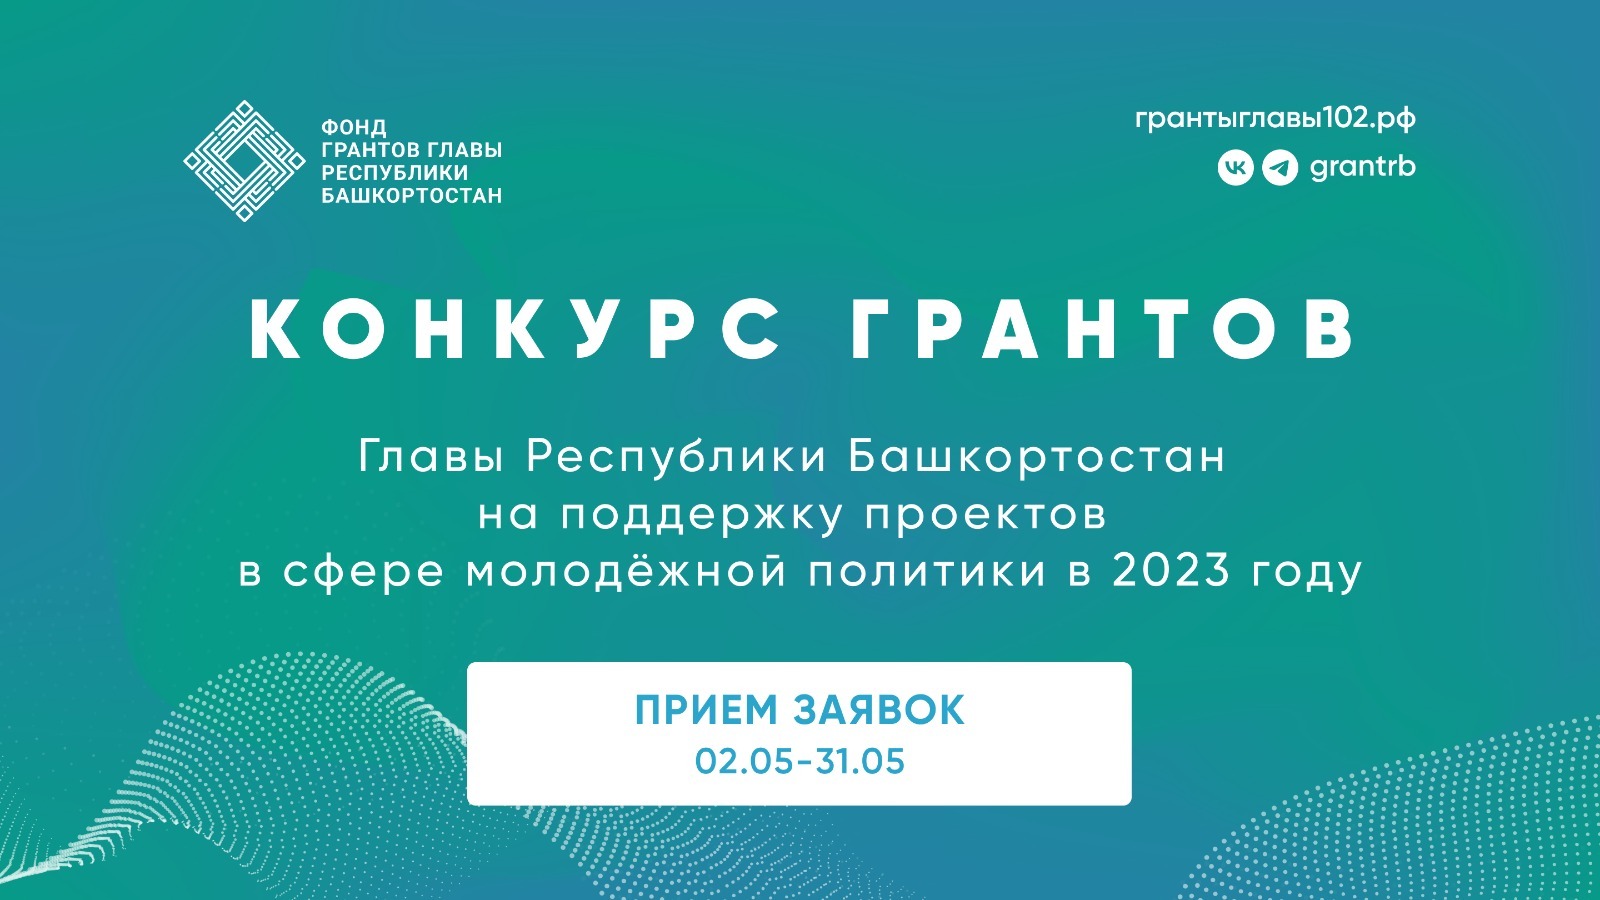 Открыт прием заявок на конкурс грантов Главы  Республики Башкортостан для НКО на поддержку проектов в сфере молодежной политики.